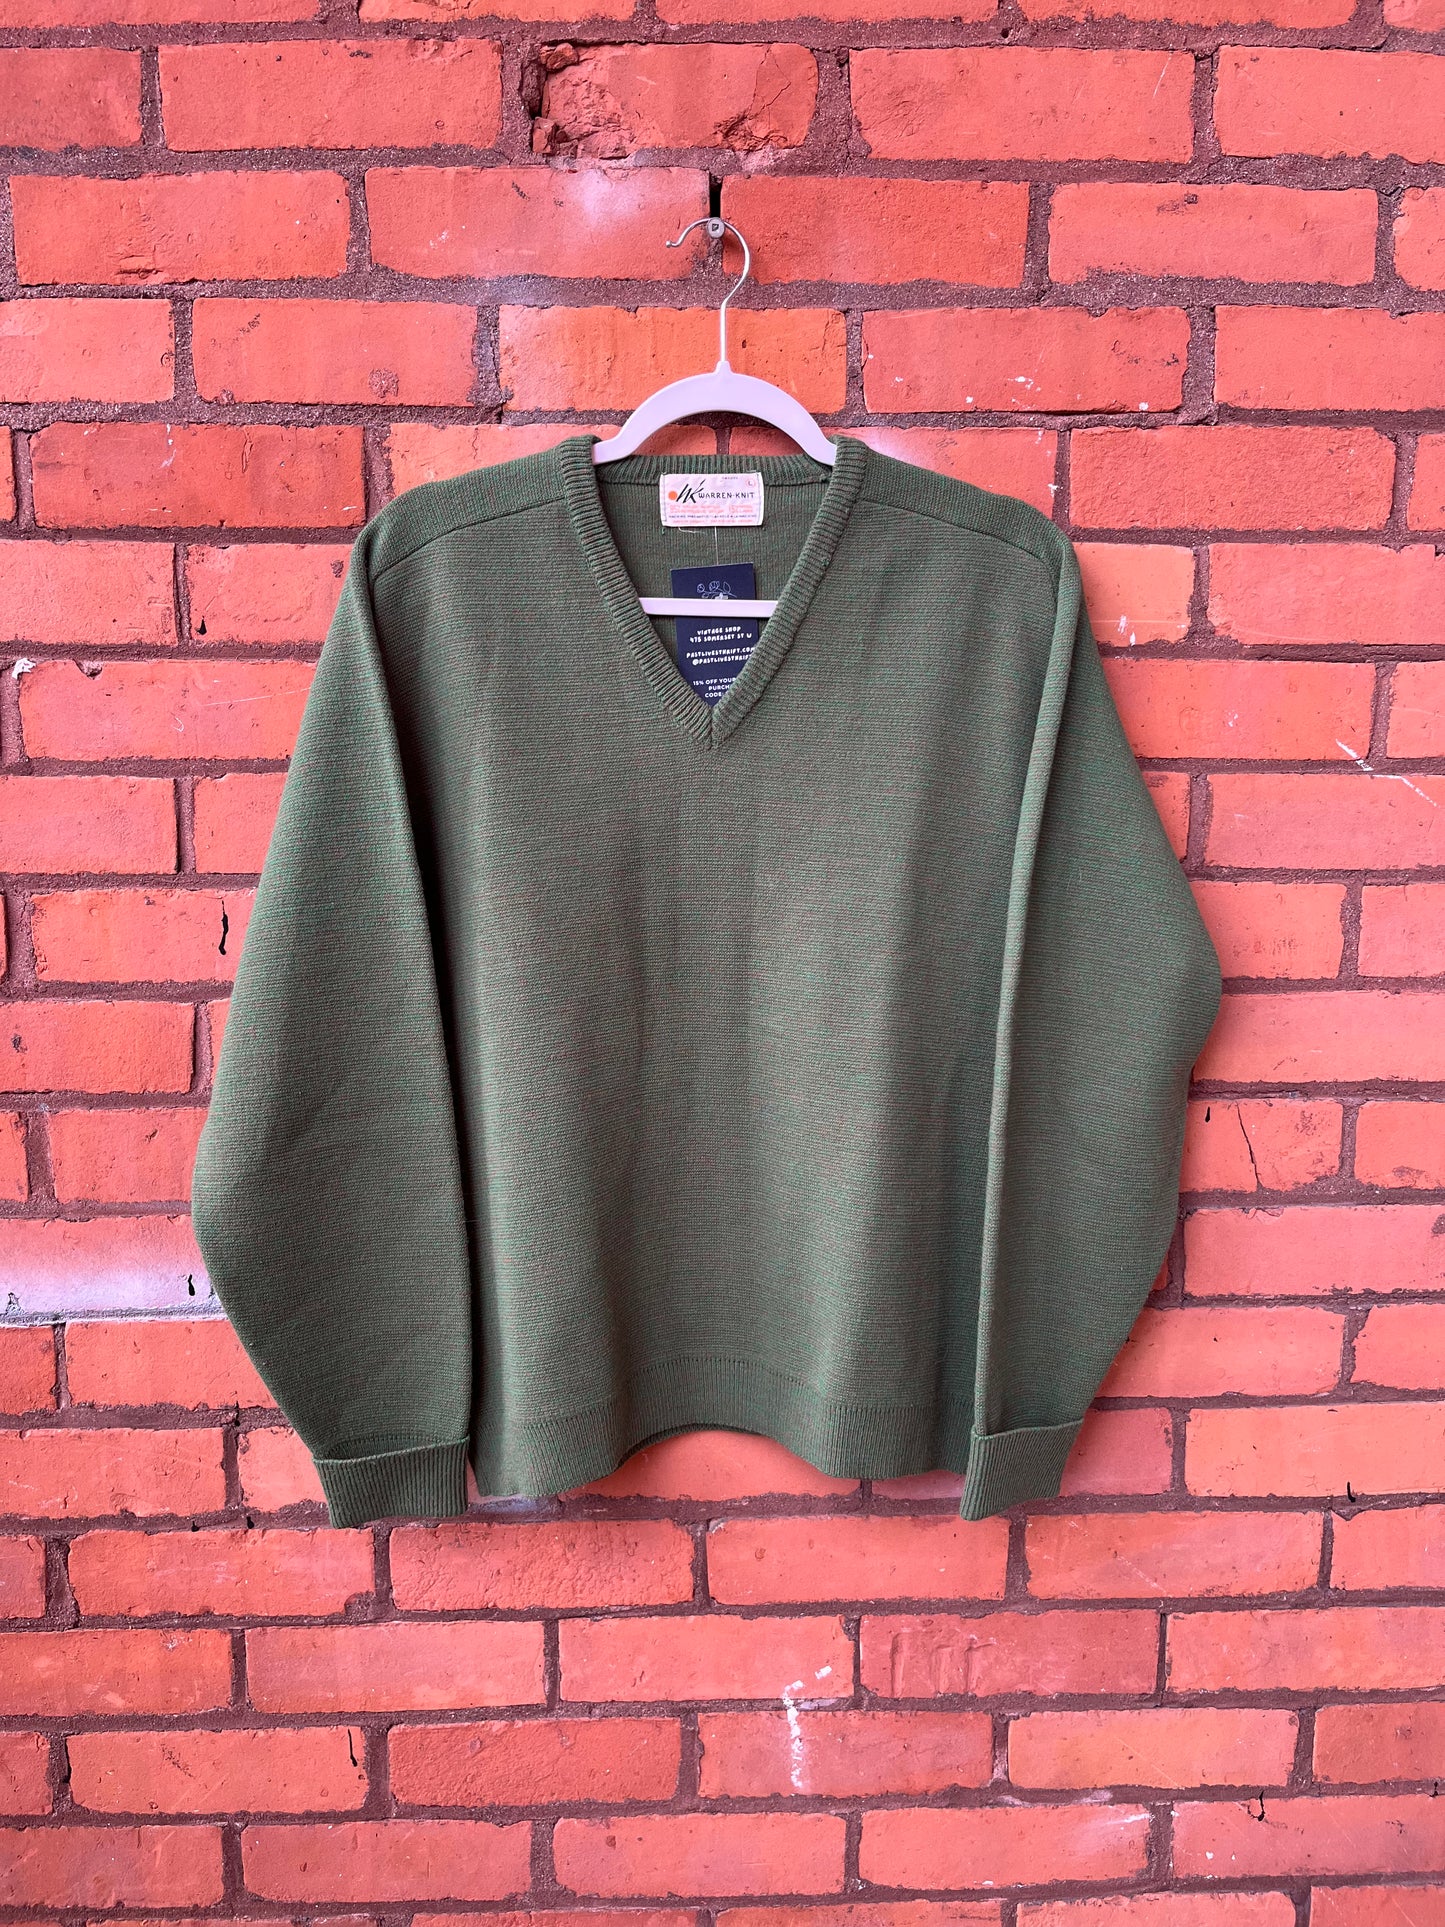 80’s Vintage Green Vneck Sweater / Size L